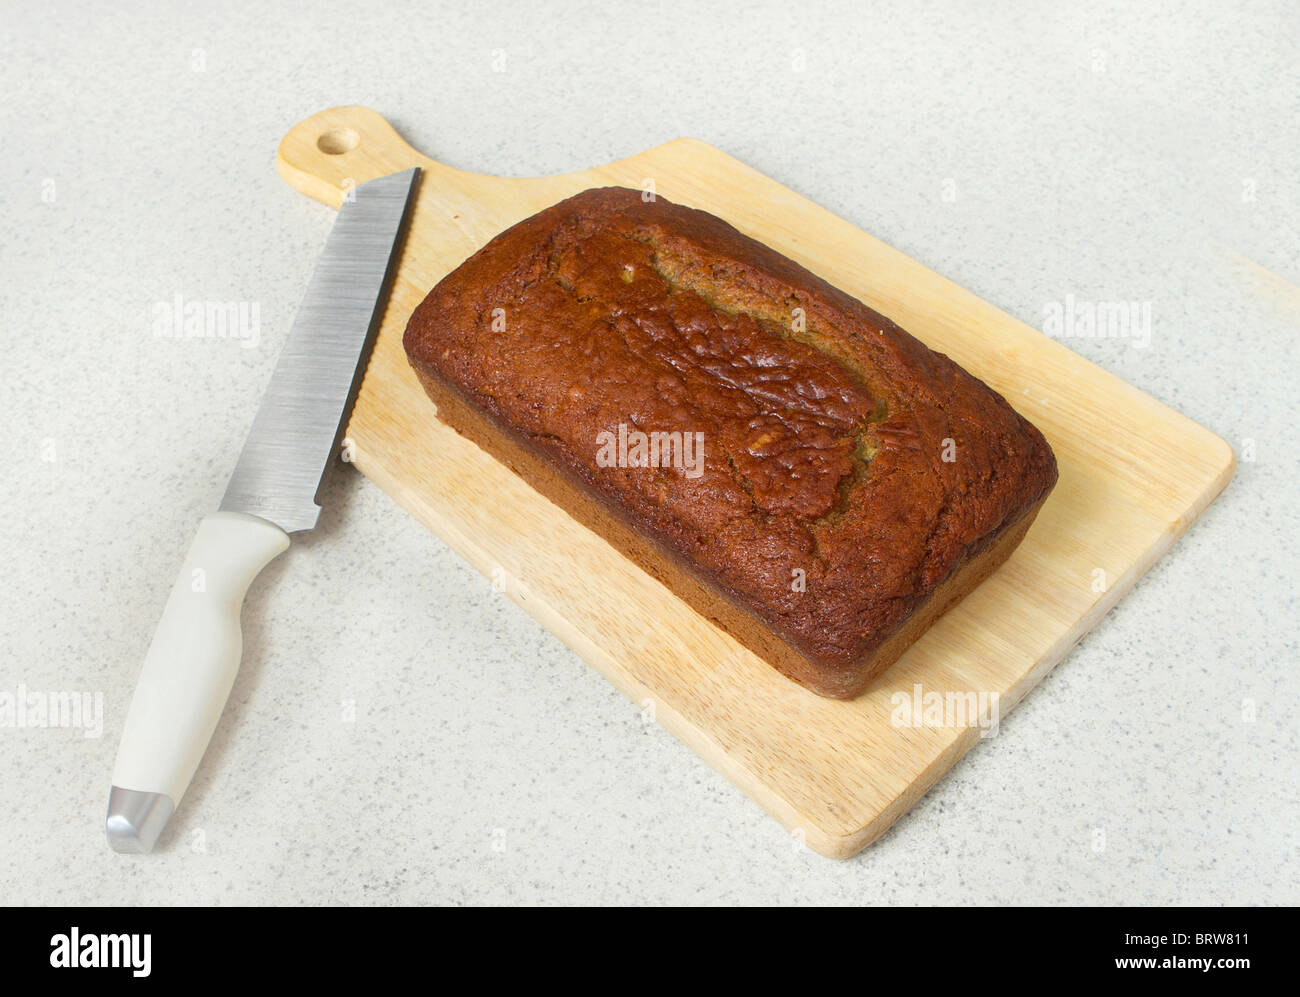 Una pagnotta di pane alla banana su un tagliere con coltello su un piano del banco Foto Stock